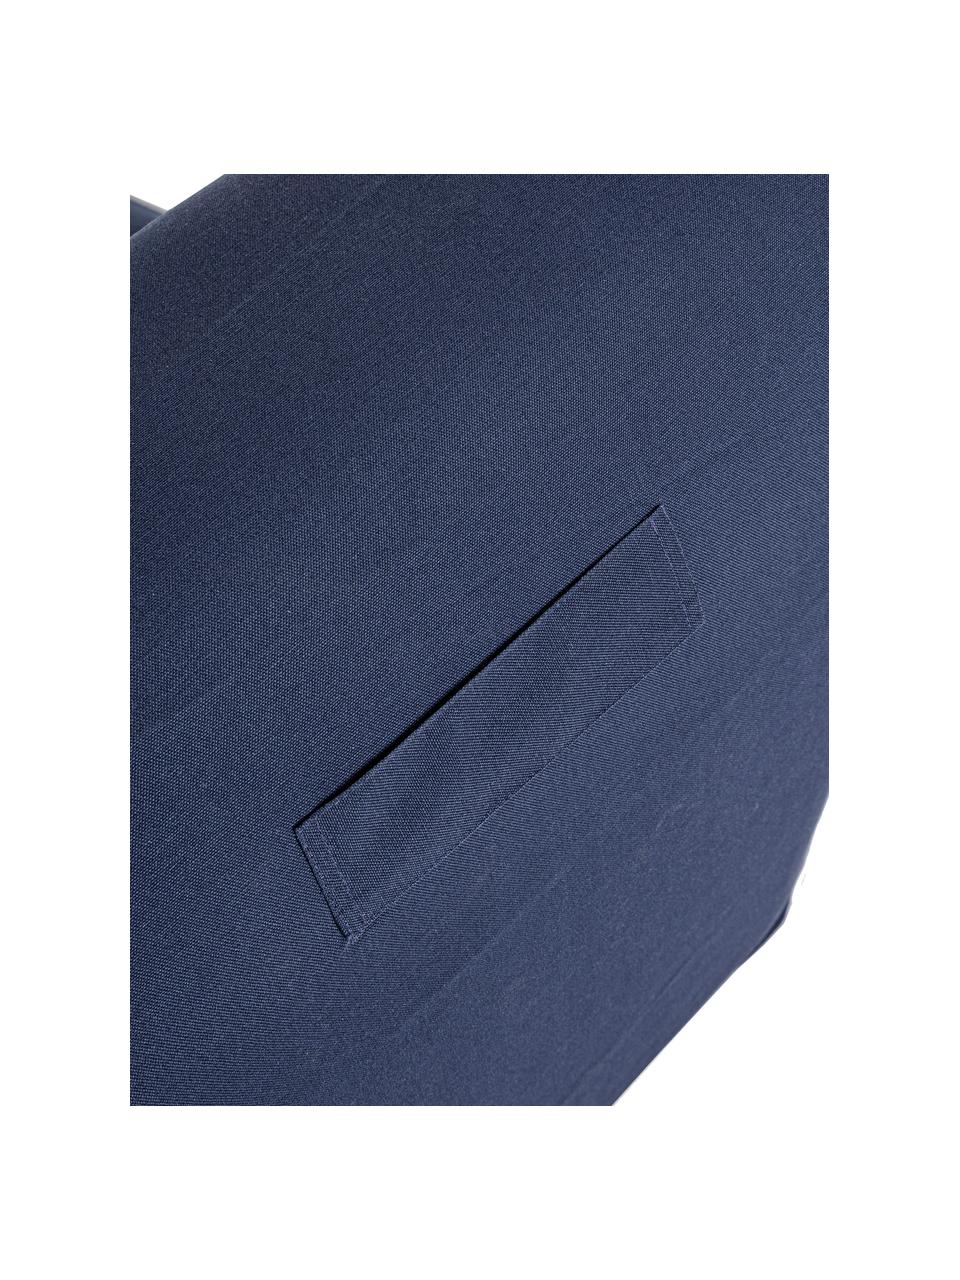 Poltrona sacco gonfiabile da giardino color blu scuro Rihanna, Rivestimento: tessuto in poliestere (20, Blu scuro, bianco, Larg. 60 x Prof. 90 cm